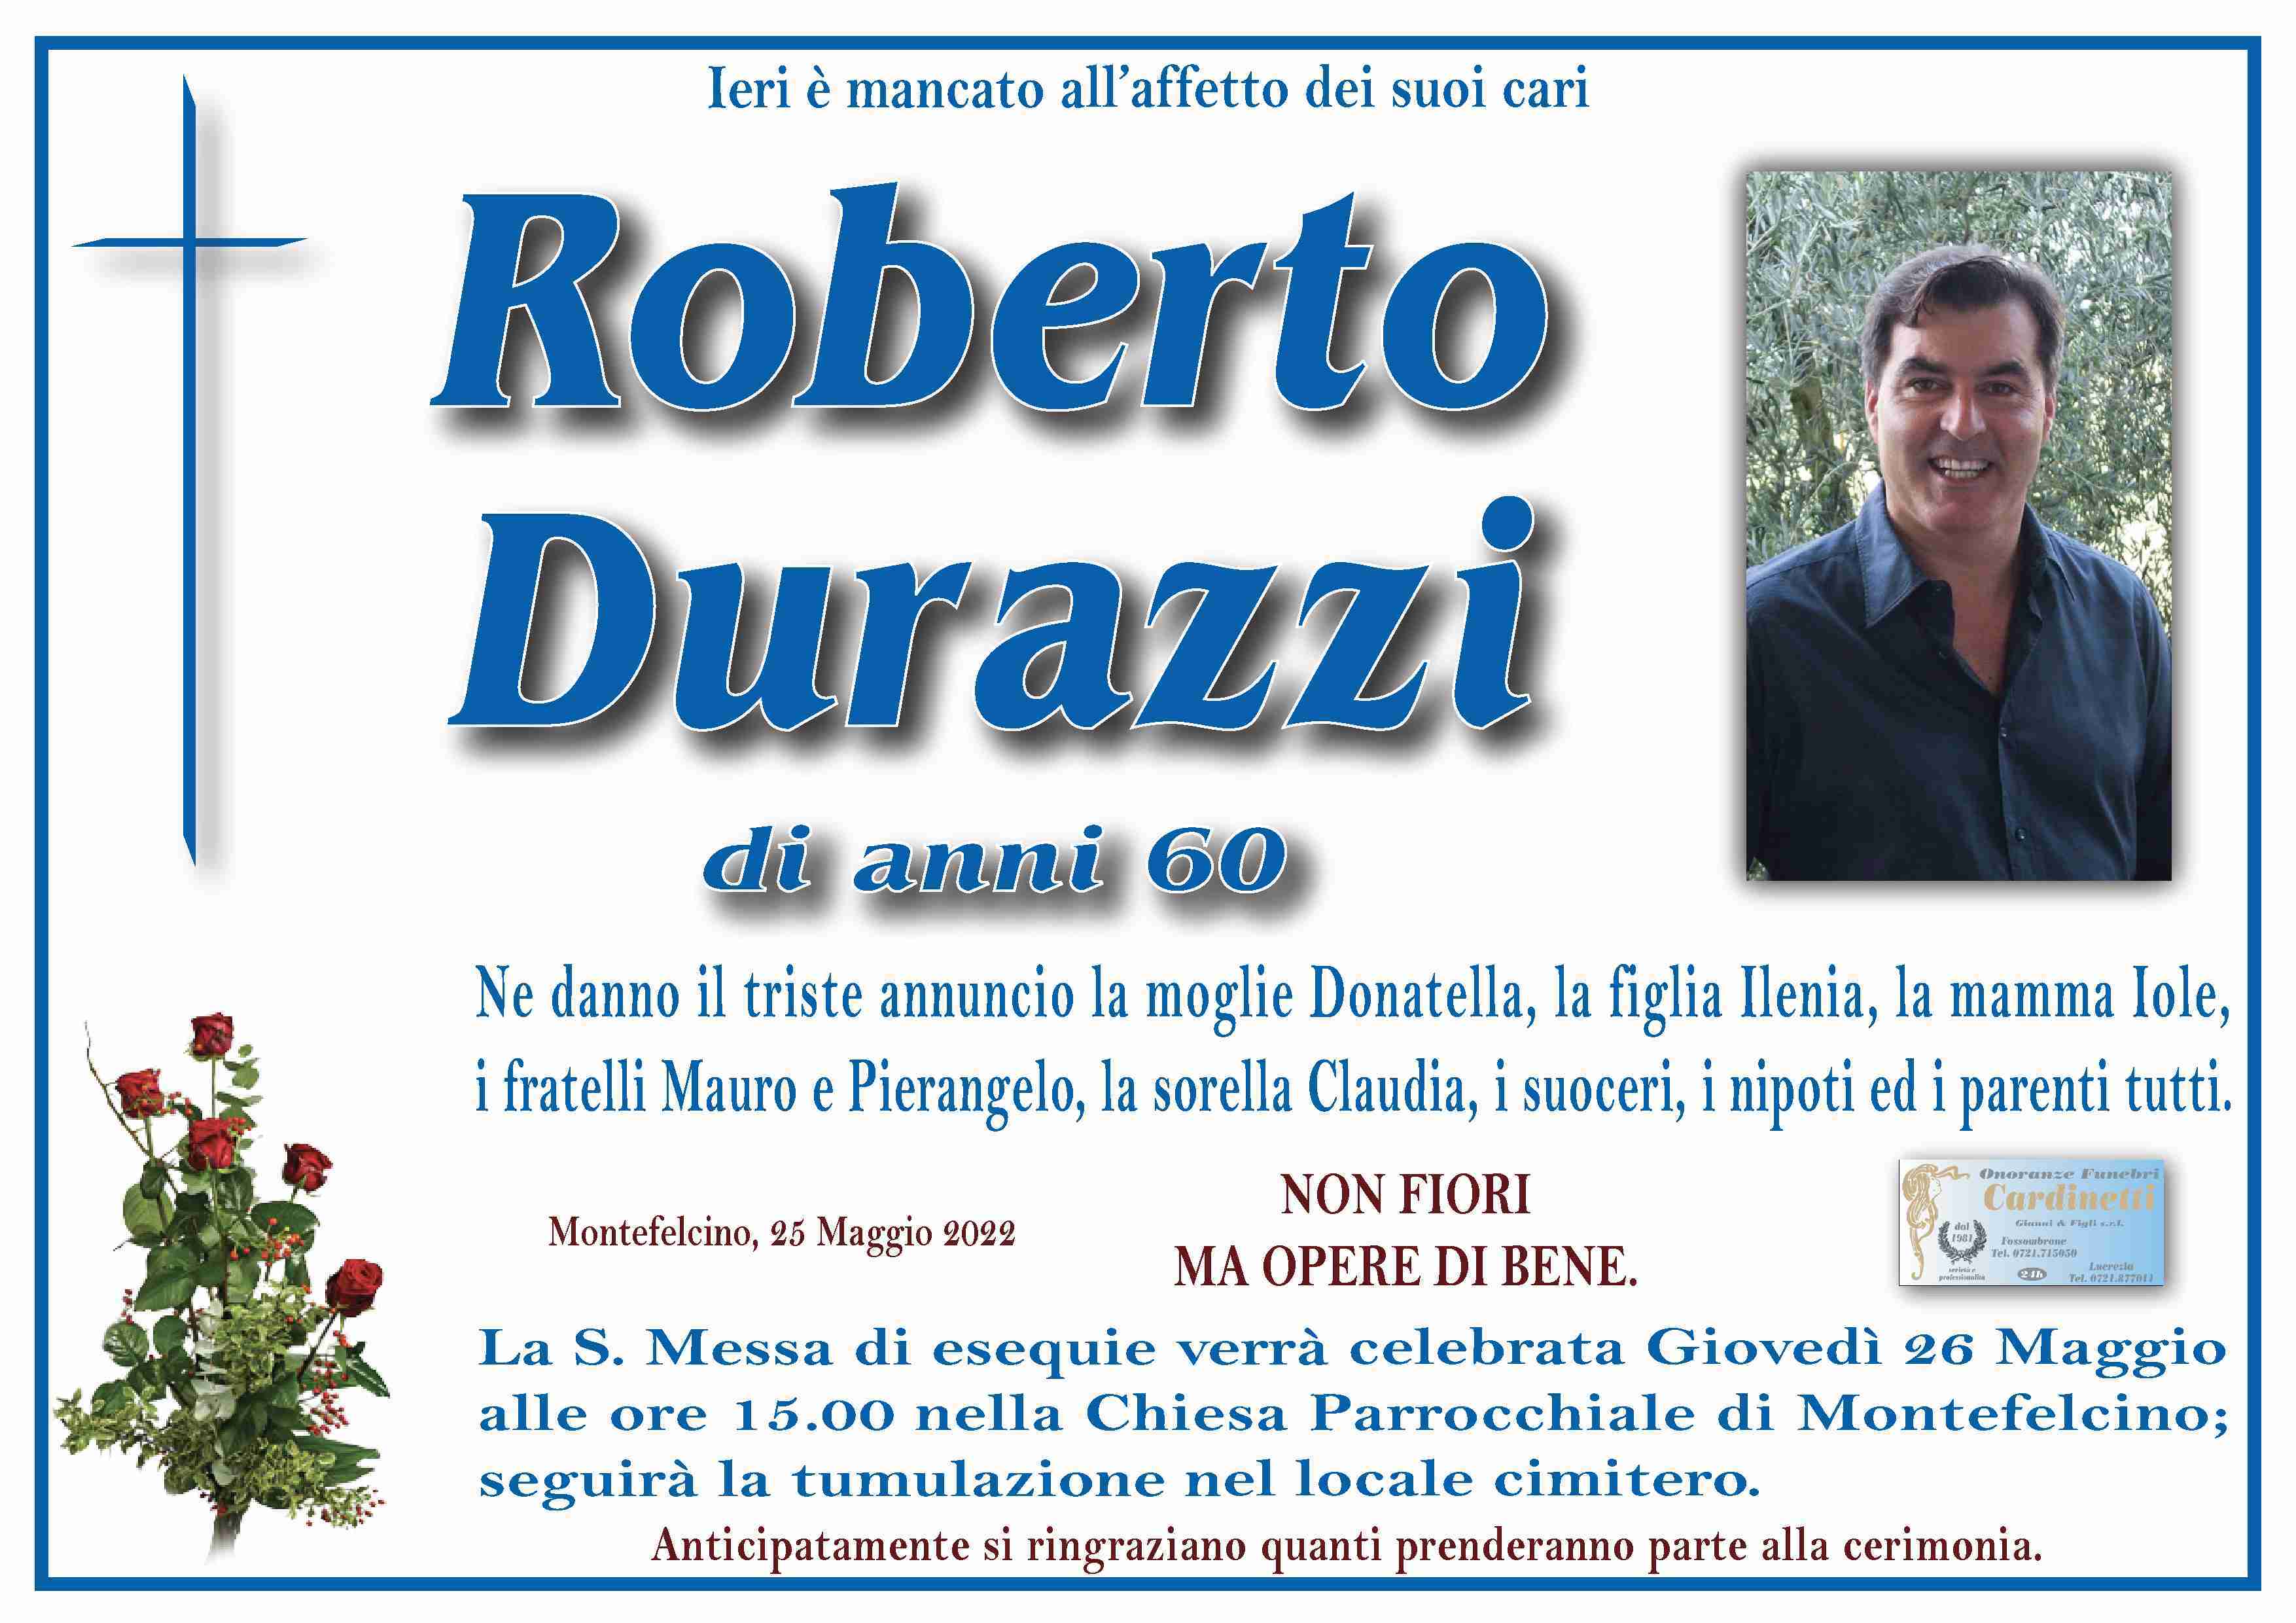 Roberto Durazzi